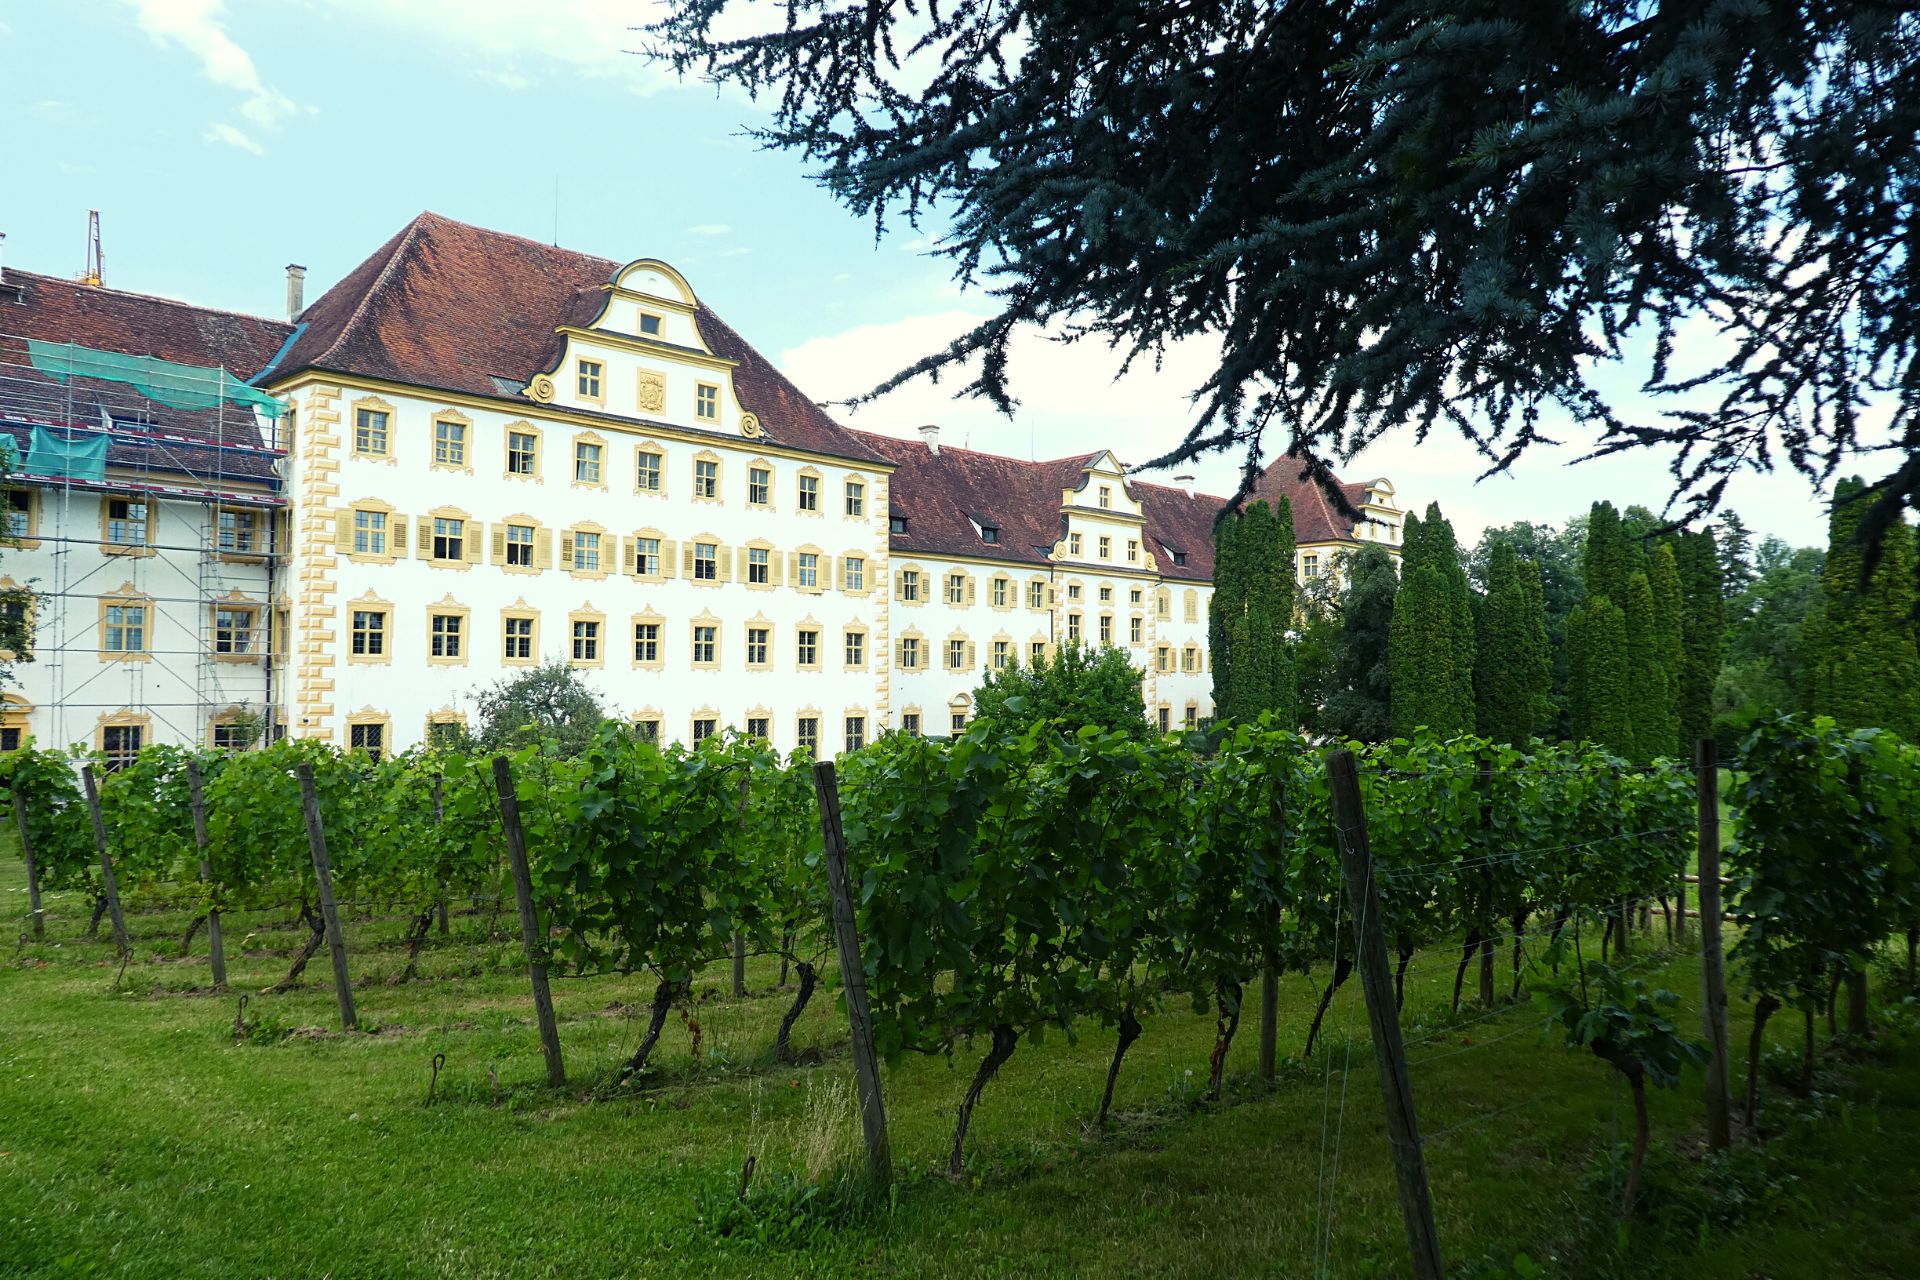 Bodenseewein: Weinbau in Kloster und Schloss Salem